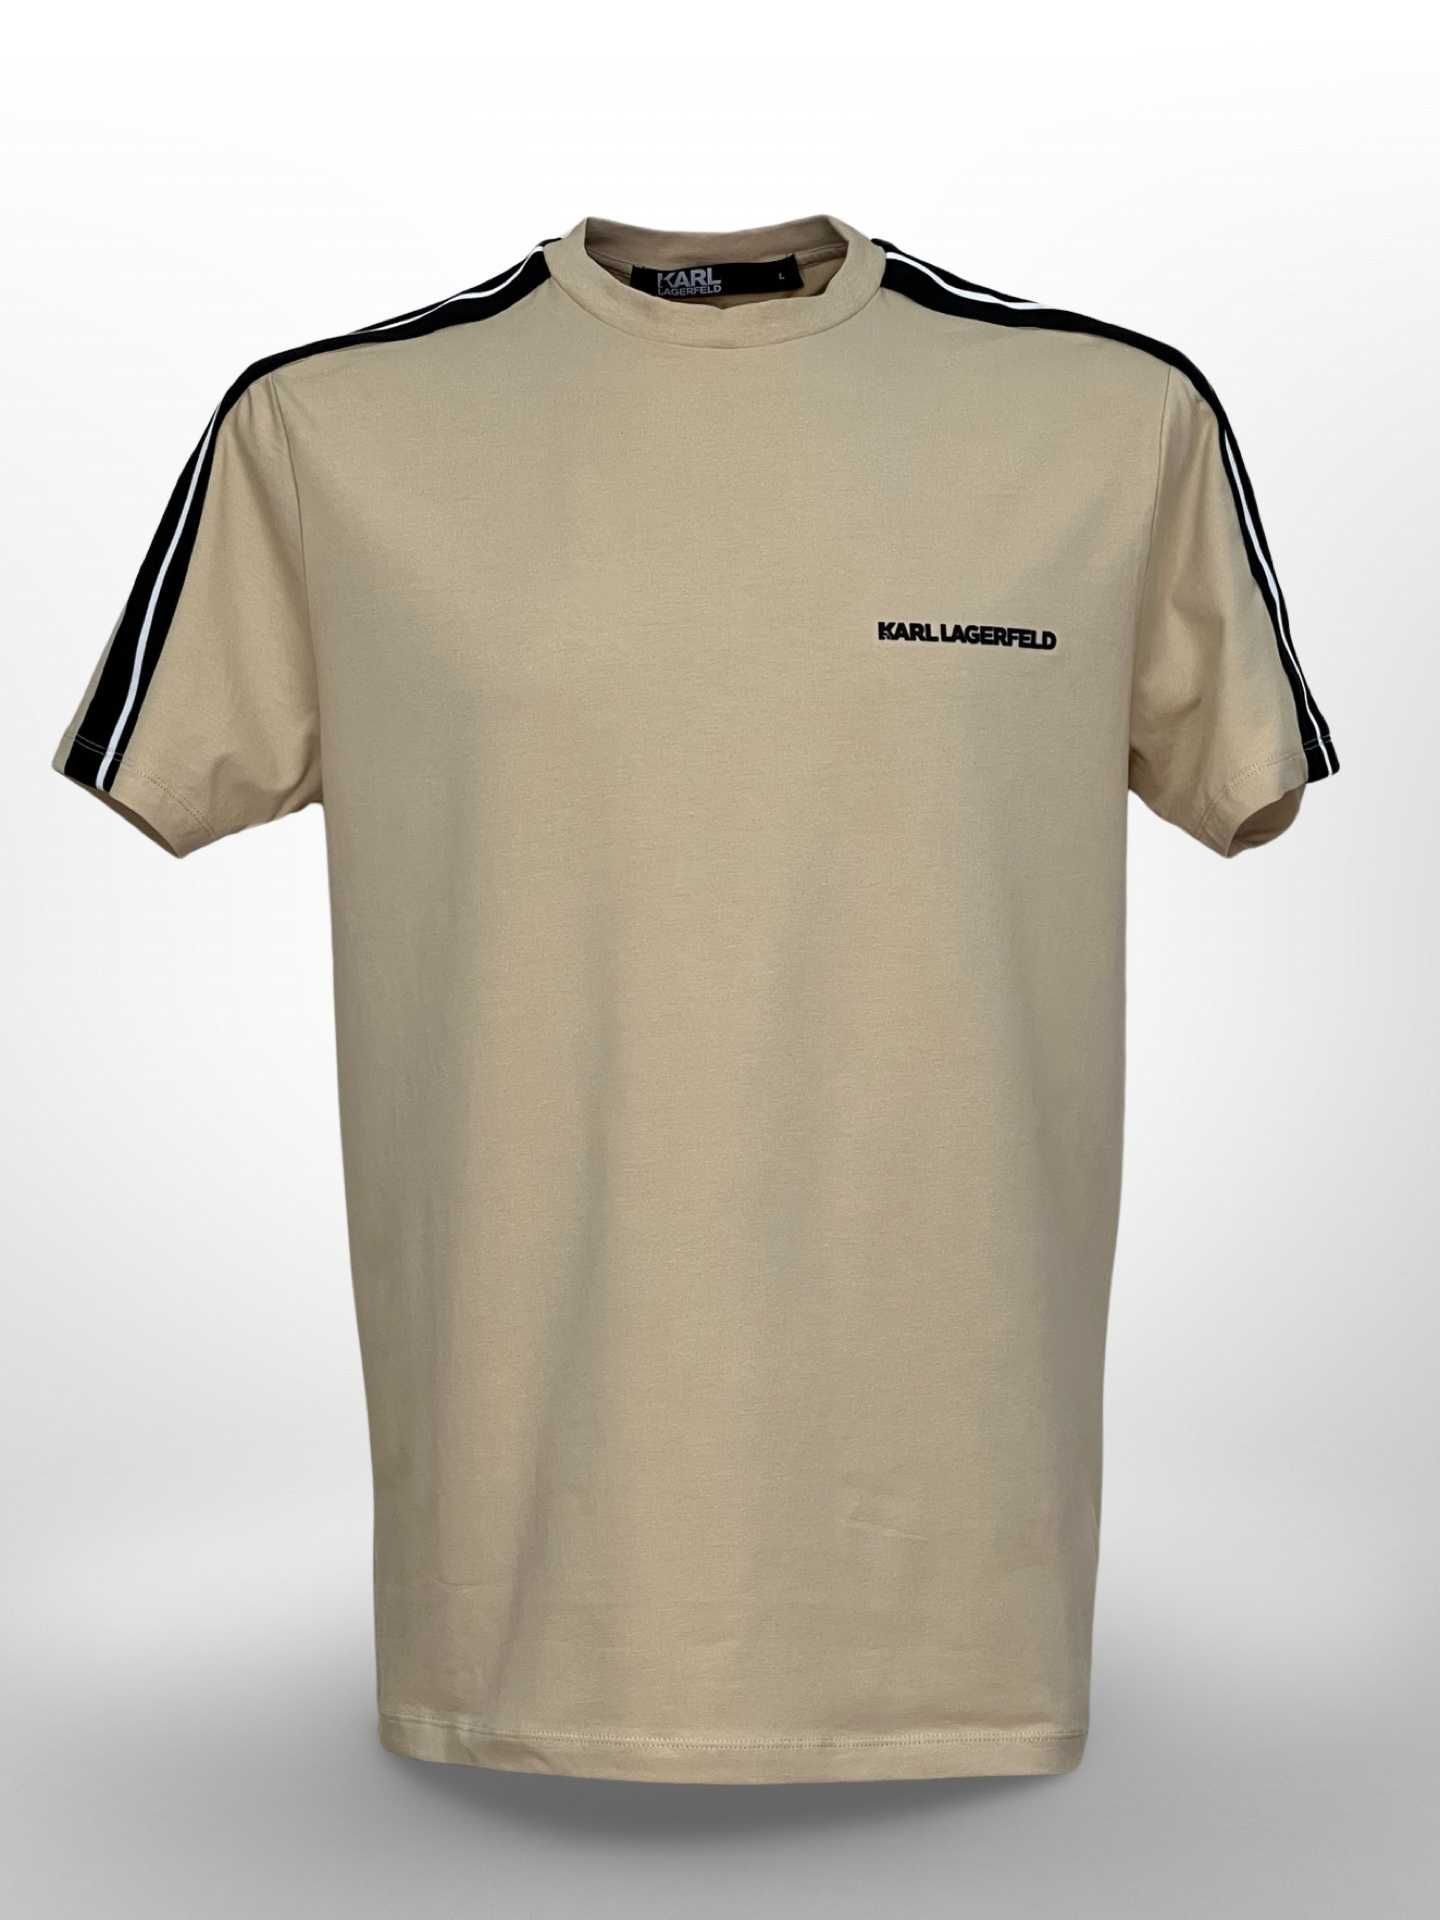 SS23-24 Karl Lagerfeld тениска с пагони ОРИГИНАЛ - S, M, L